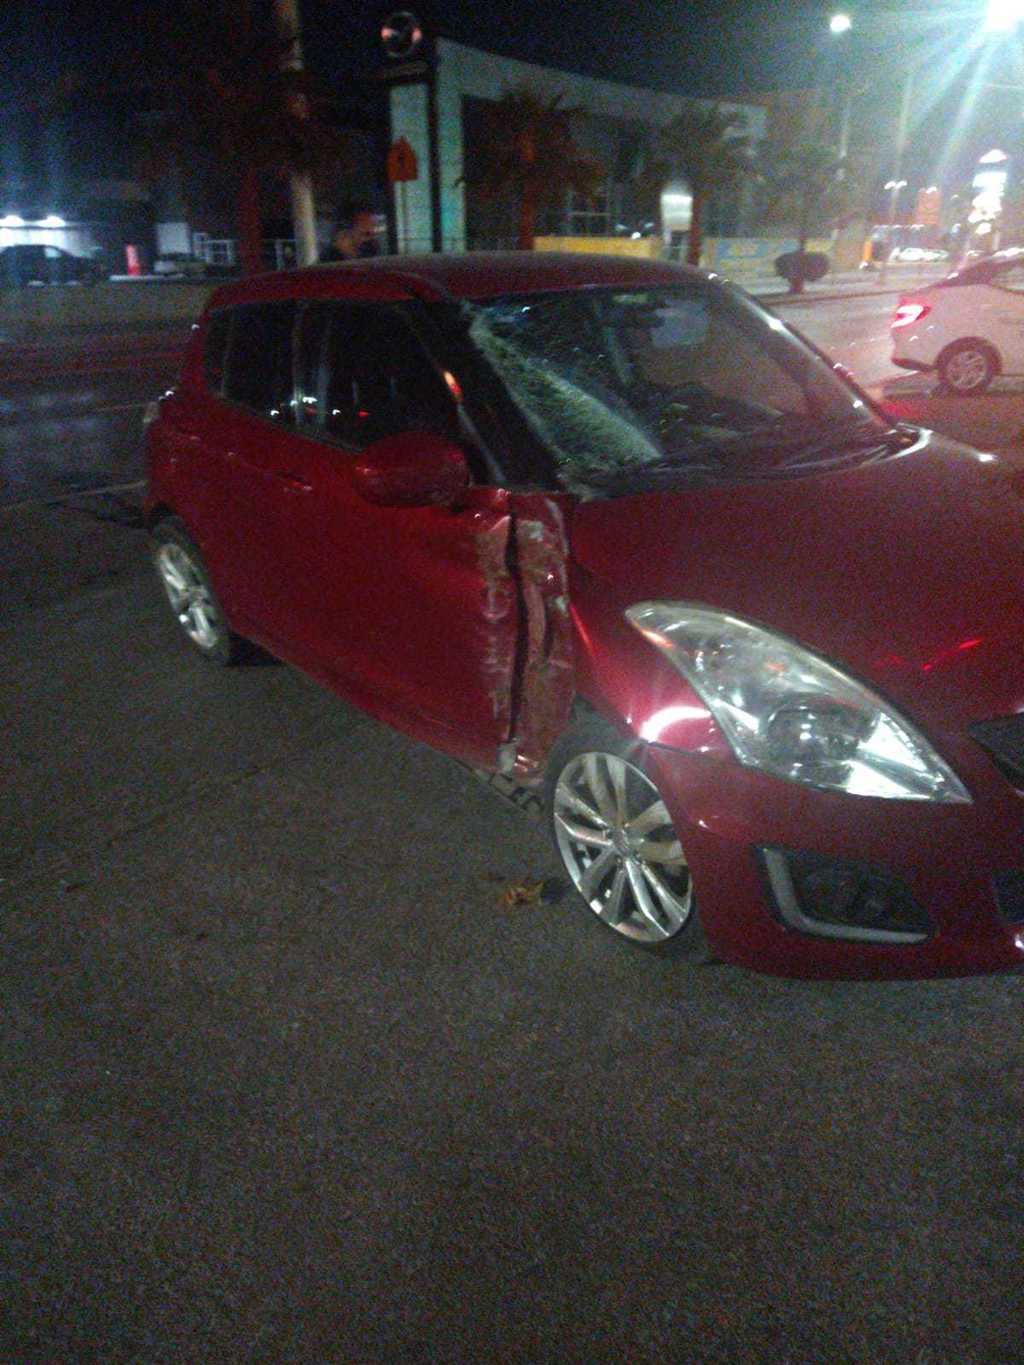 El automóvil siniestrado es un Suzuki Swift color rojo modelo 2016, el cual portaba las placas de circulación FPY-34-36. (EL SIGLO DE TORREÓN)